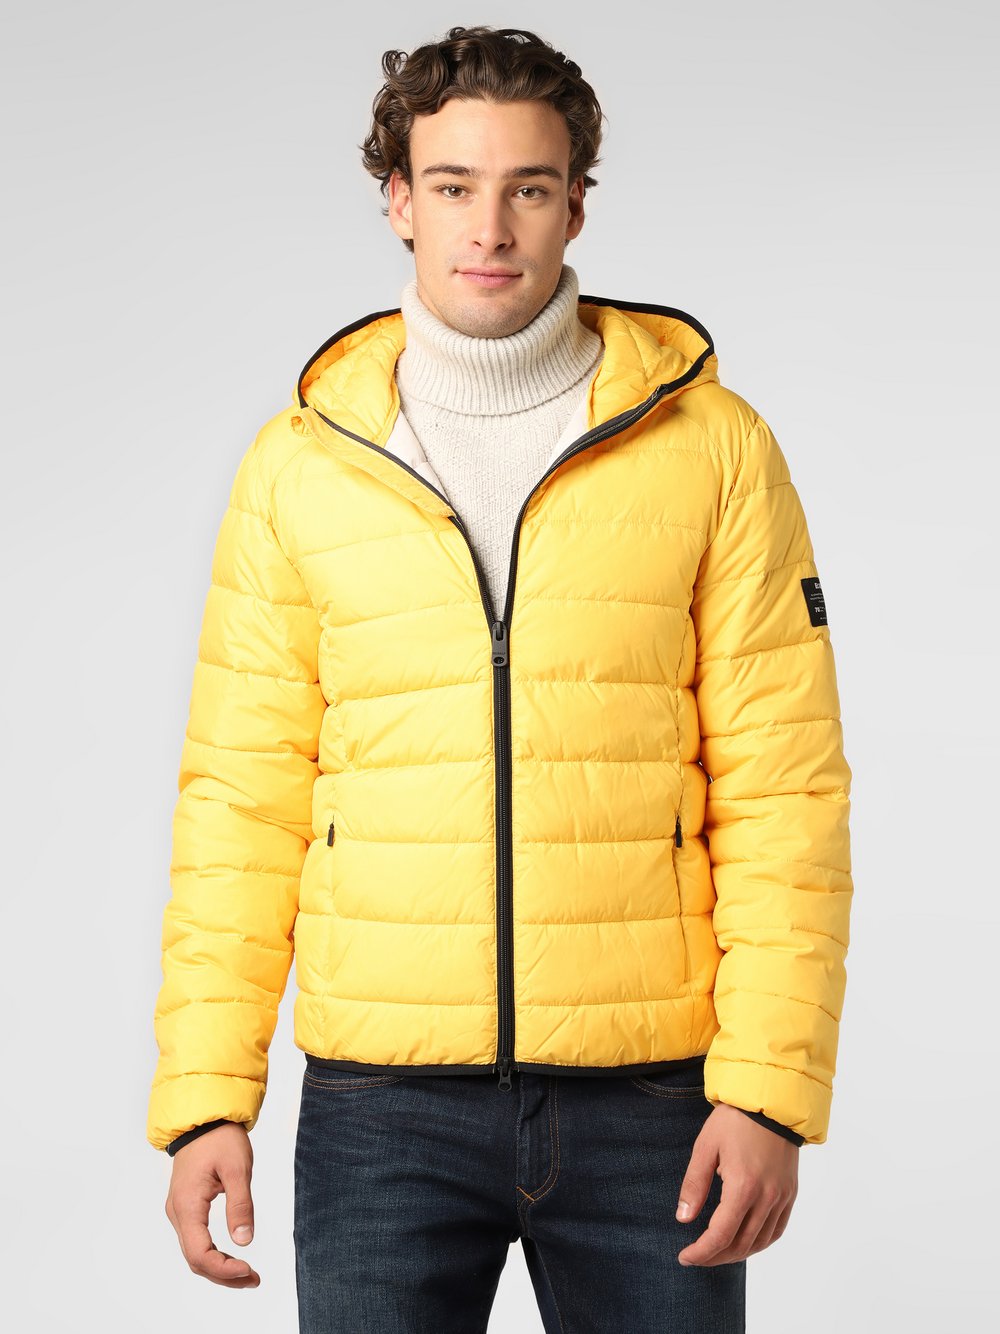 ECOALF - Męska kurtka pikowana – Aspalf, żółty